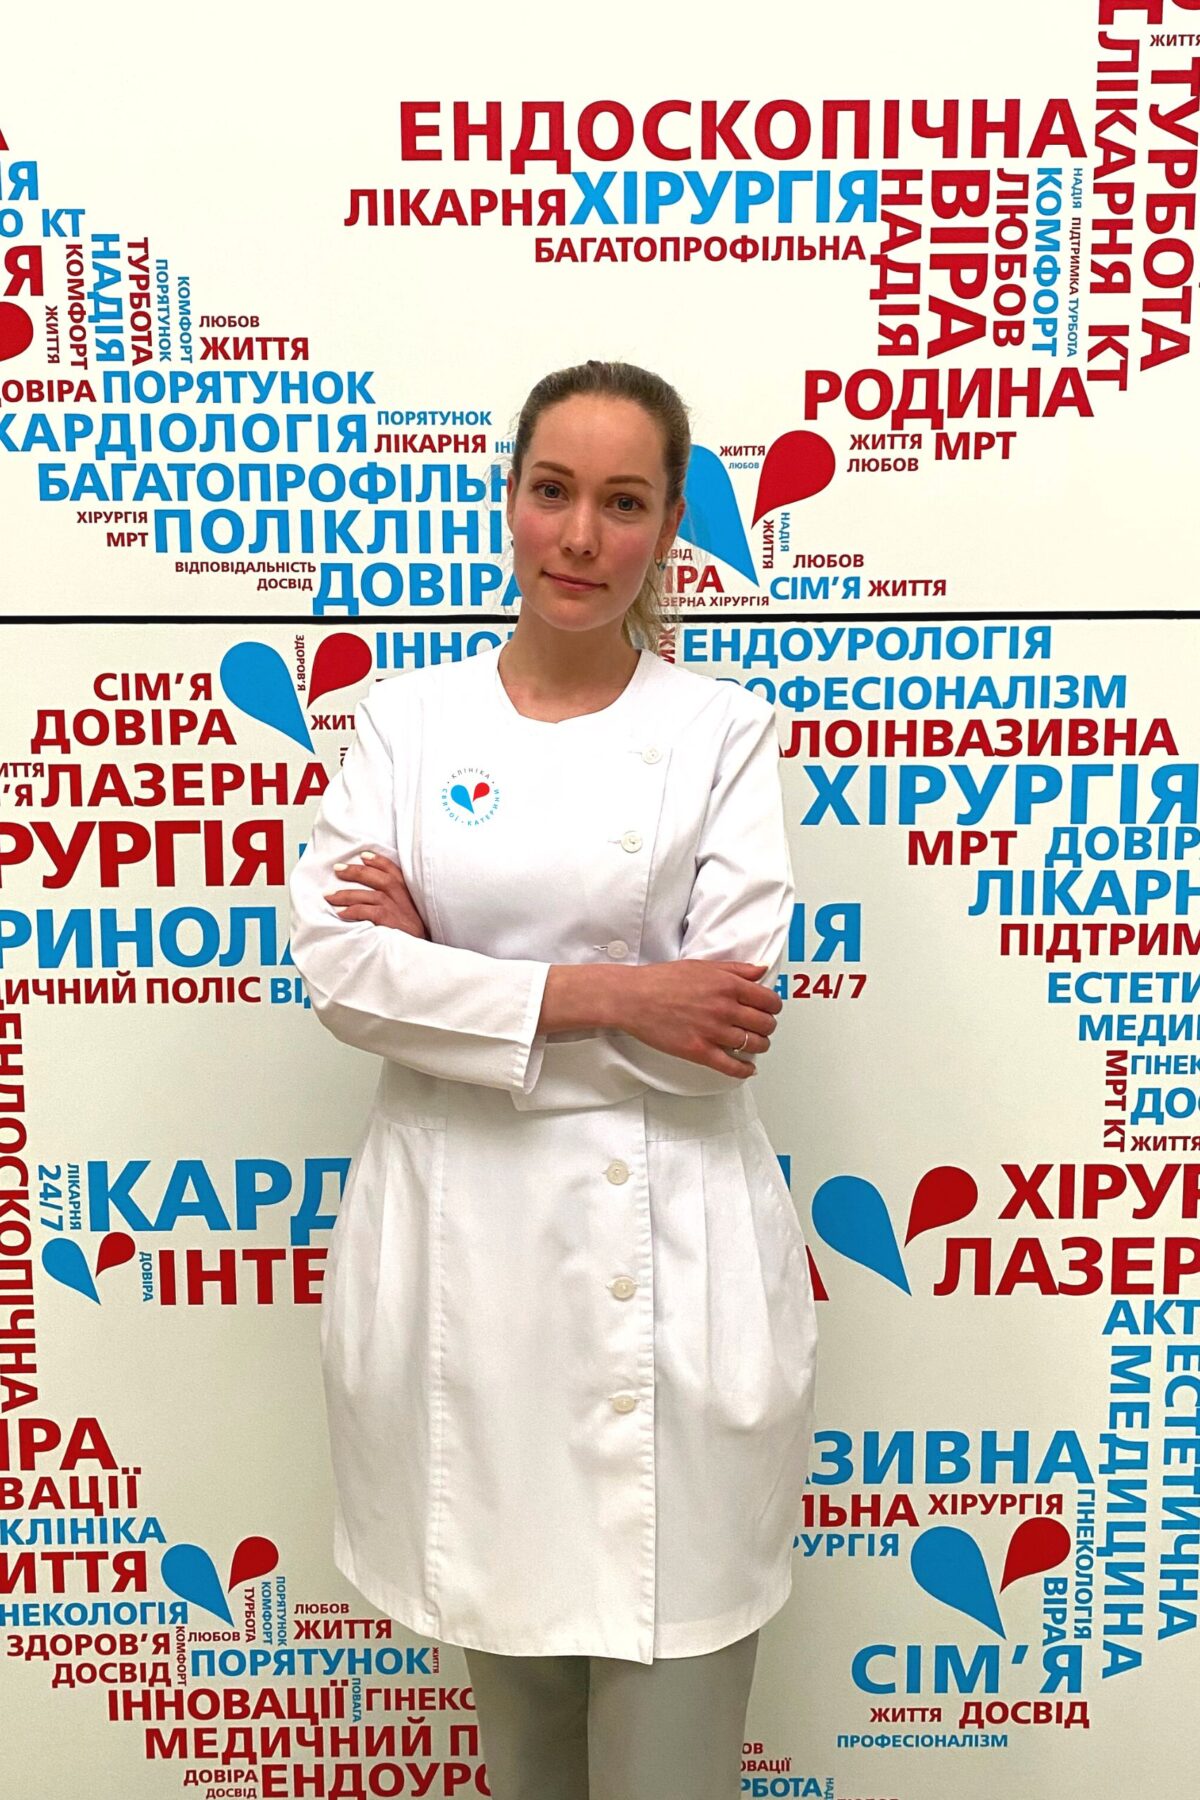 Максимчук Анна Ивановна - 19 - svekaterina.ua